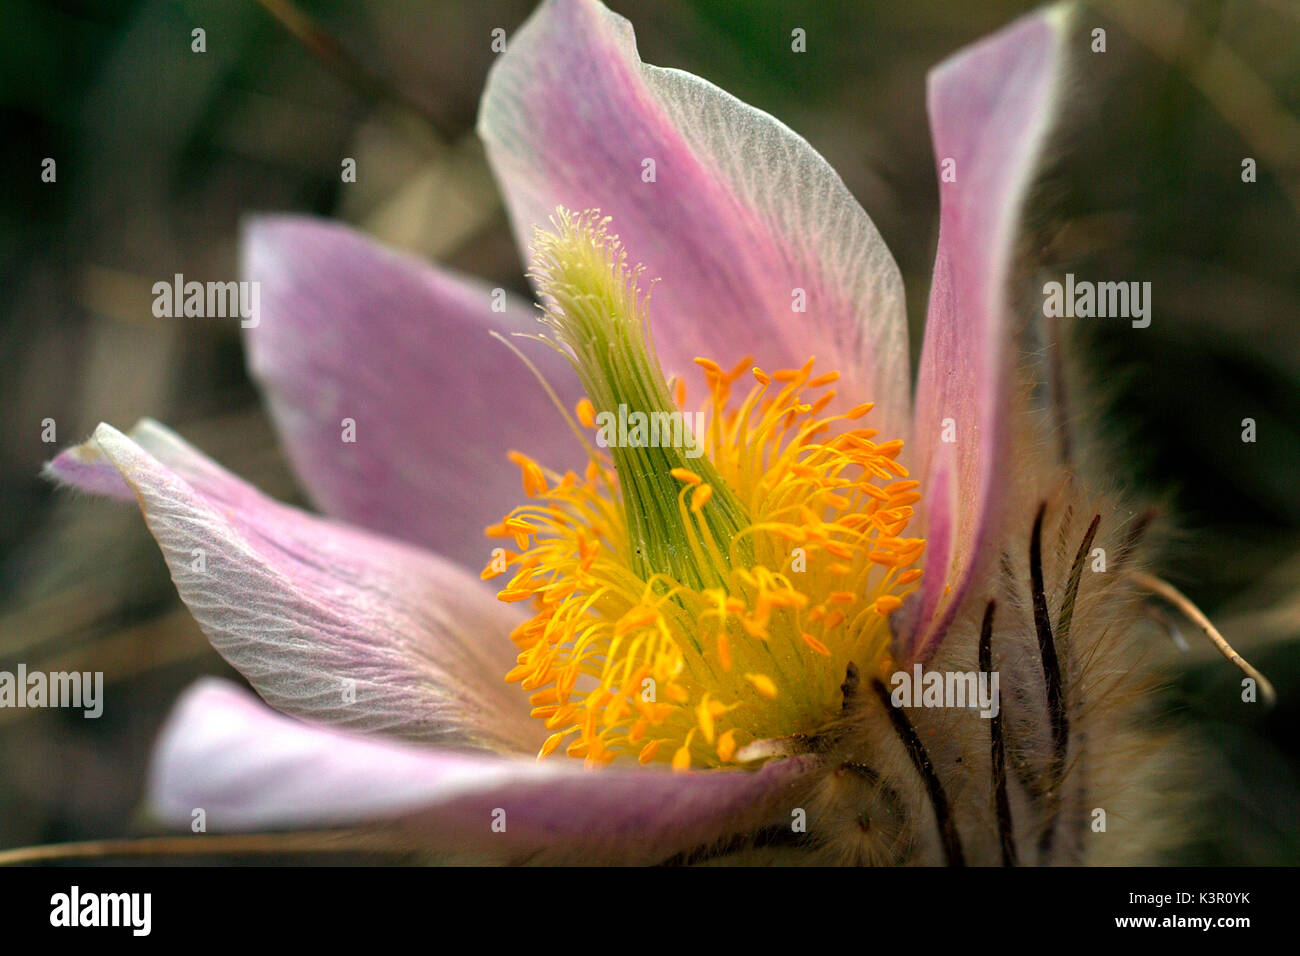 Pulsatilla alpina alpine pasqueflower (alpin ou anemone) est une espèce de plantes de la famille Ranunculaceae, originaire de la chaîne de montagne de l'Europe centrale et méridionale, Italie Lombardie Banque D'Images